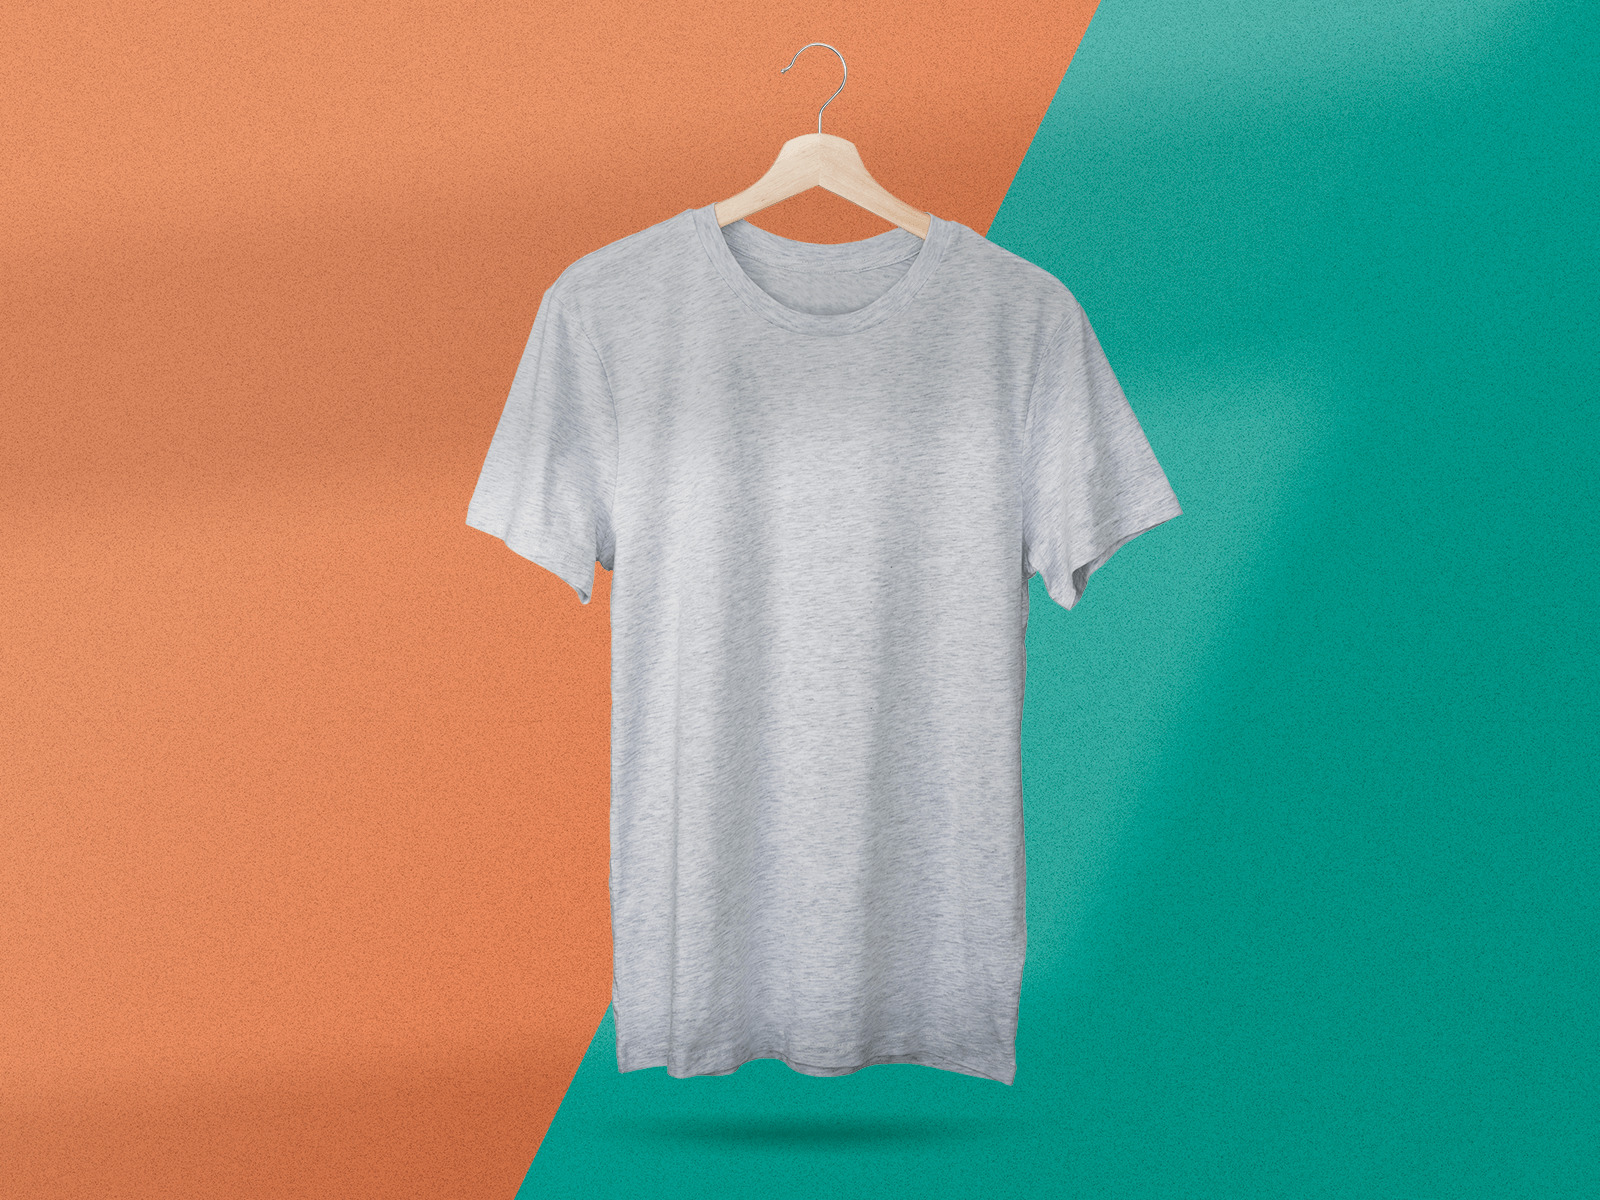 Free Men’s T-Shirt on Hanger Mockup